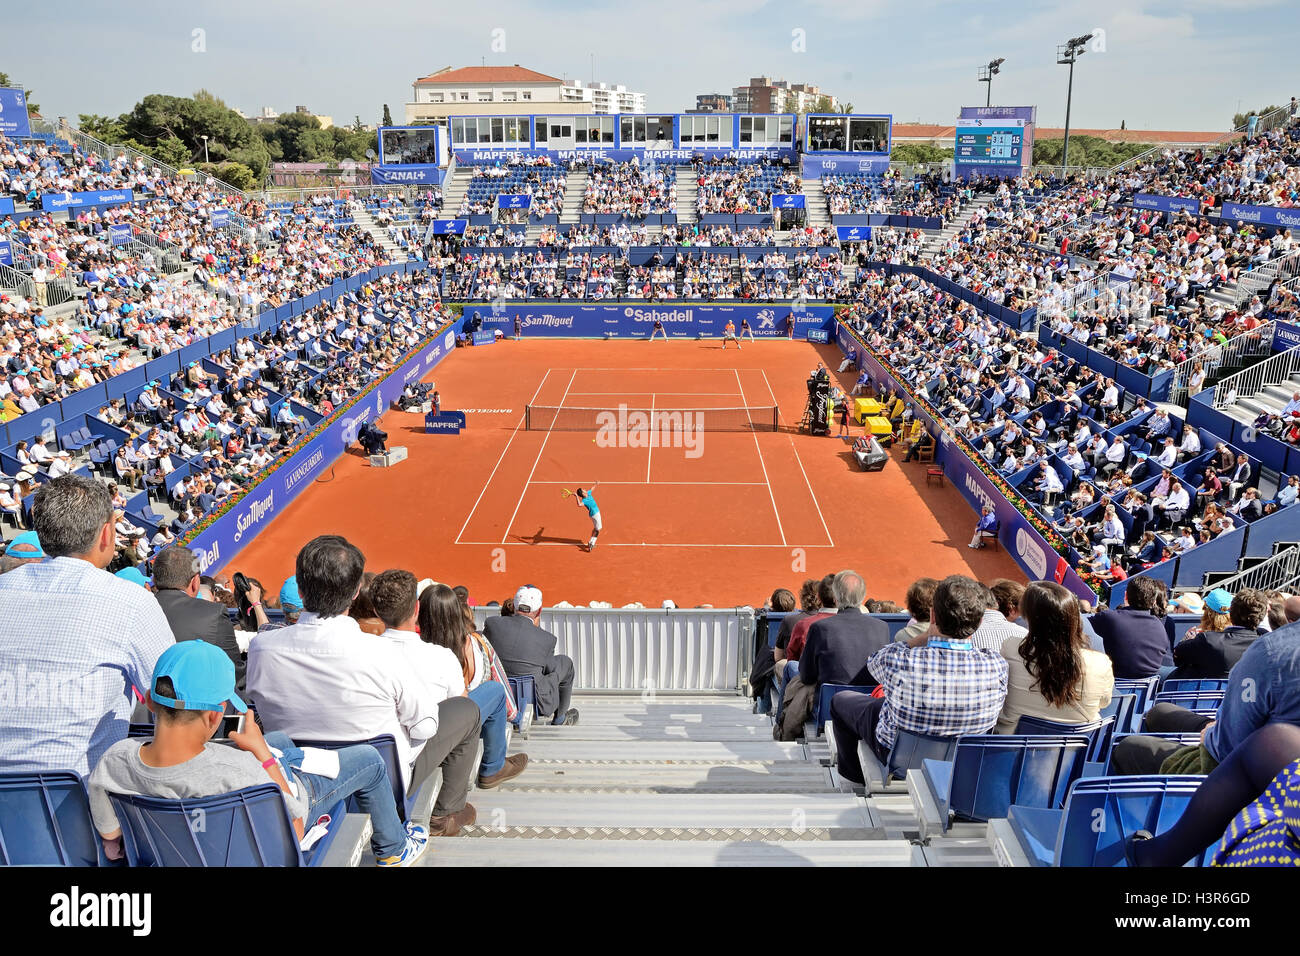 Barcelone - APR 26 : les spectateurs à l'ATP Open de Barcelone Banc Sabadell  Conde de Godo tournoi Photo Stock - Alamy